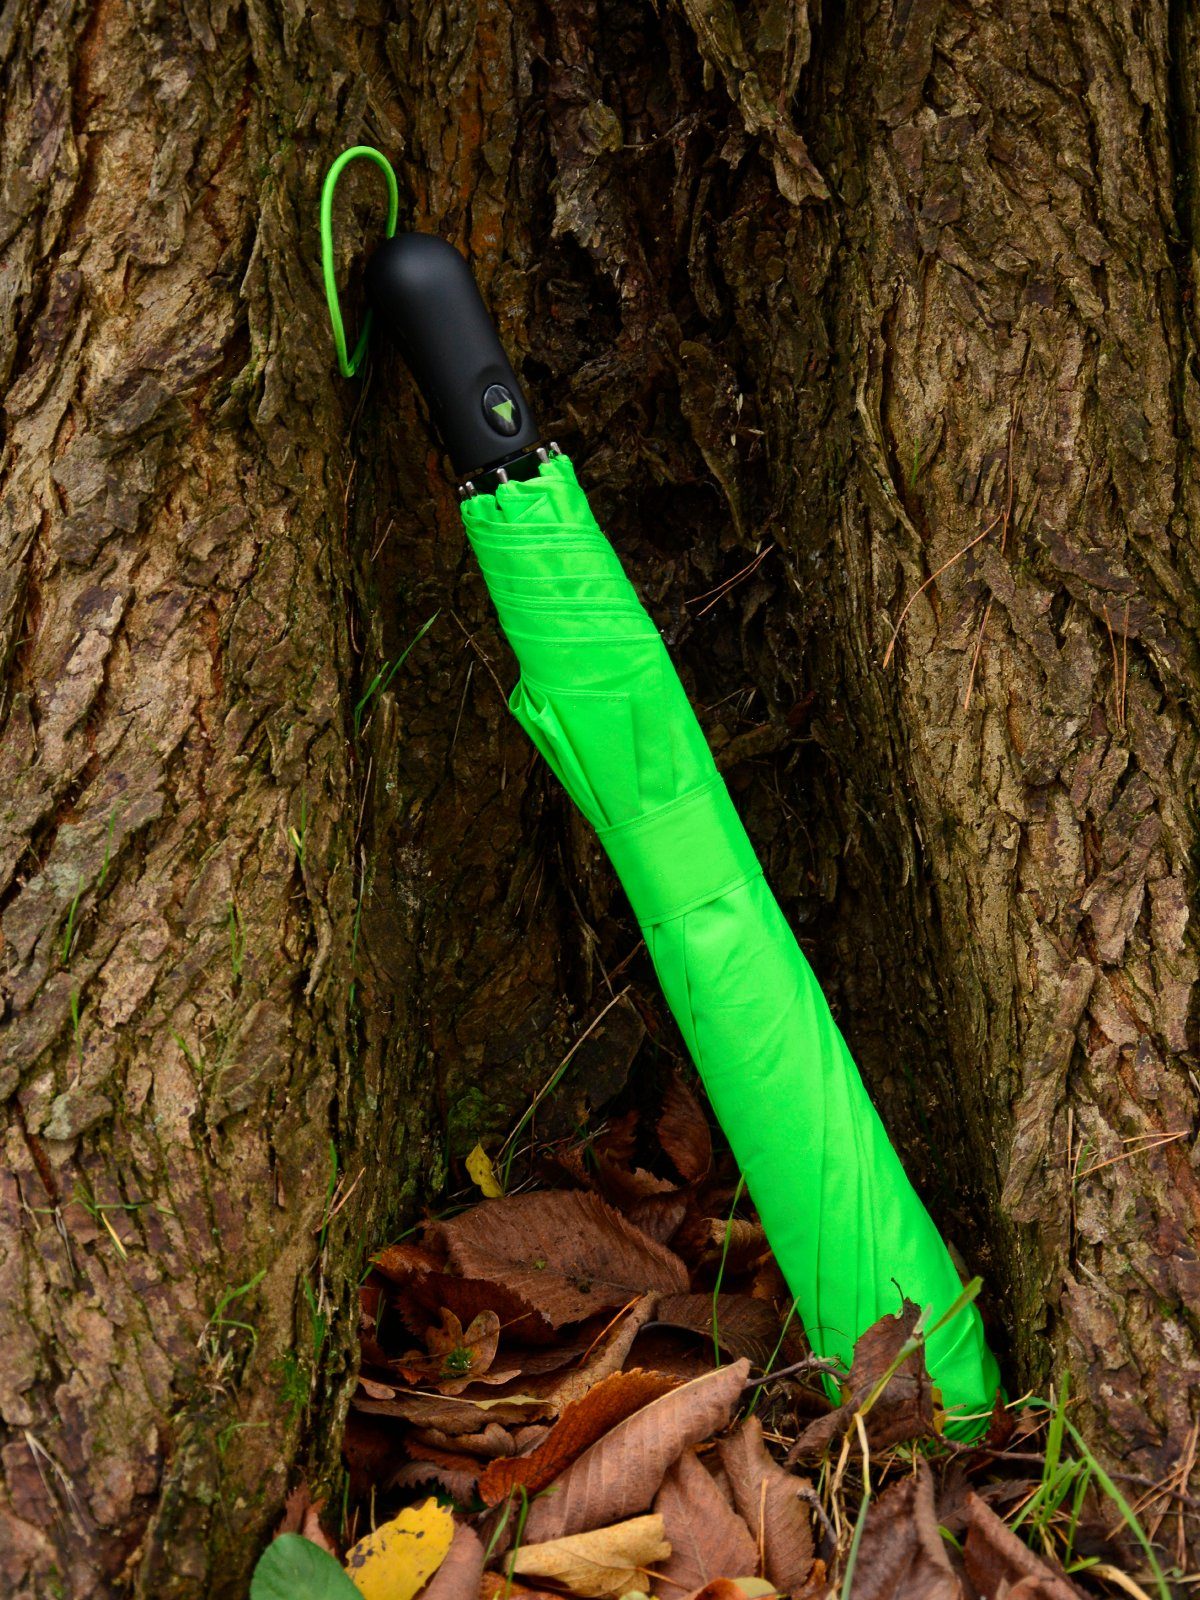 mit Dach-Durchmesser Umhängetasche, mit Trekking riesigem iX-brella neon-grün 124cm XXL Taschenregenschirm Golf-Taschenschirm